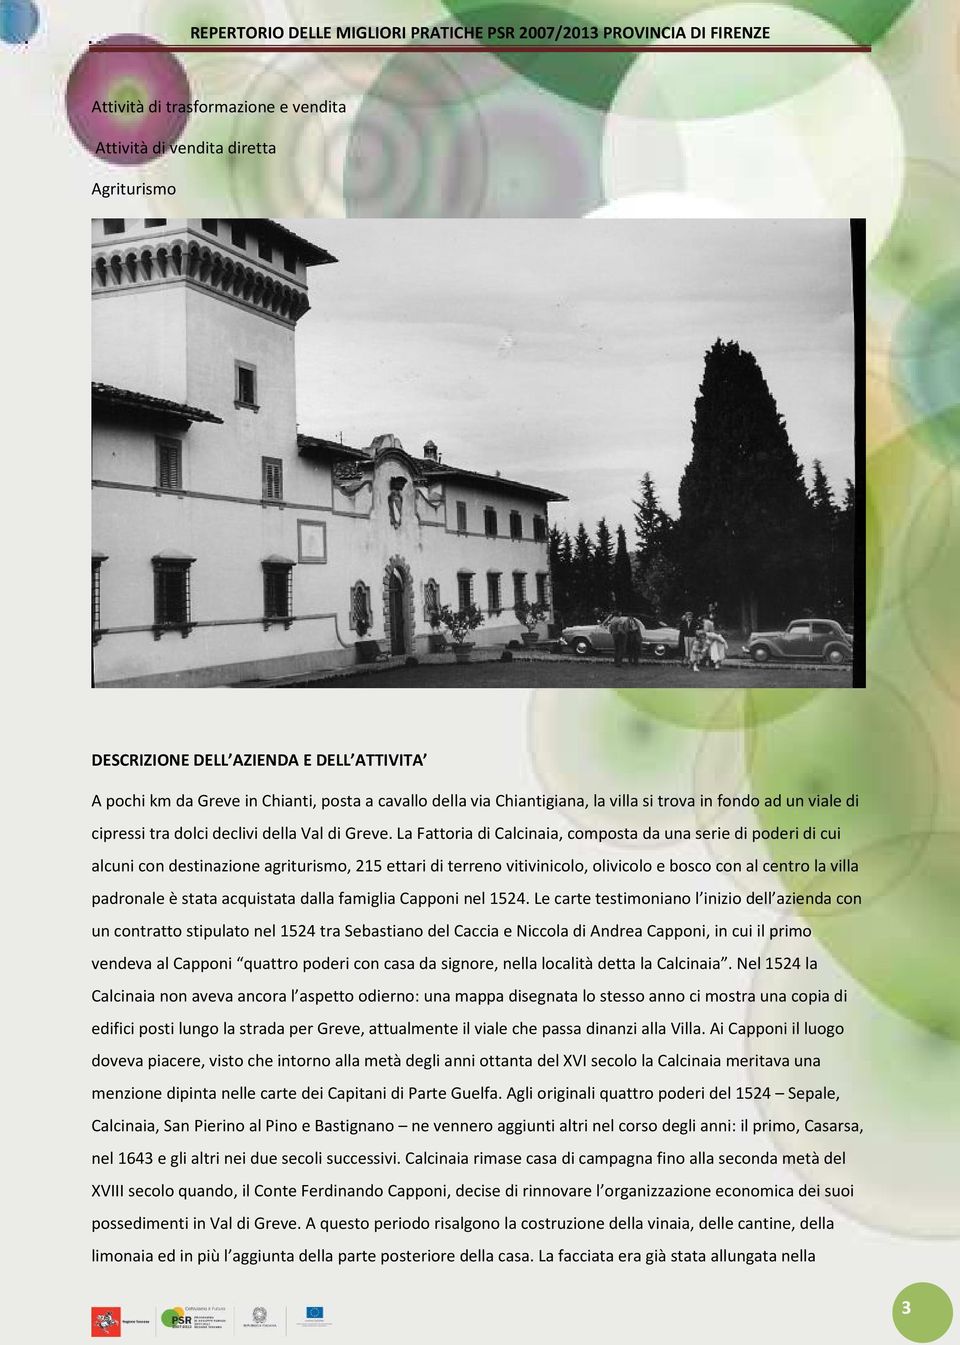 La Fattoria di Calcinaia, composta da una serie di poderi di cui alcuni con destinazione agriturismo, 215 ettari di terreno vitivinicolo, olivicolo e bosco con al centro la villa padronale è stata